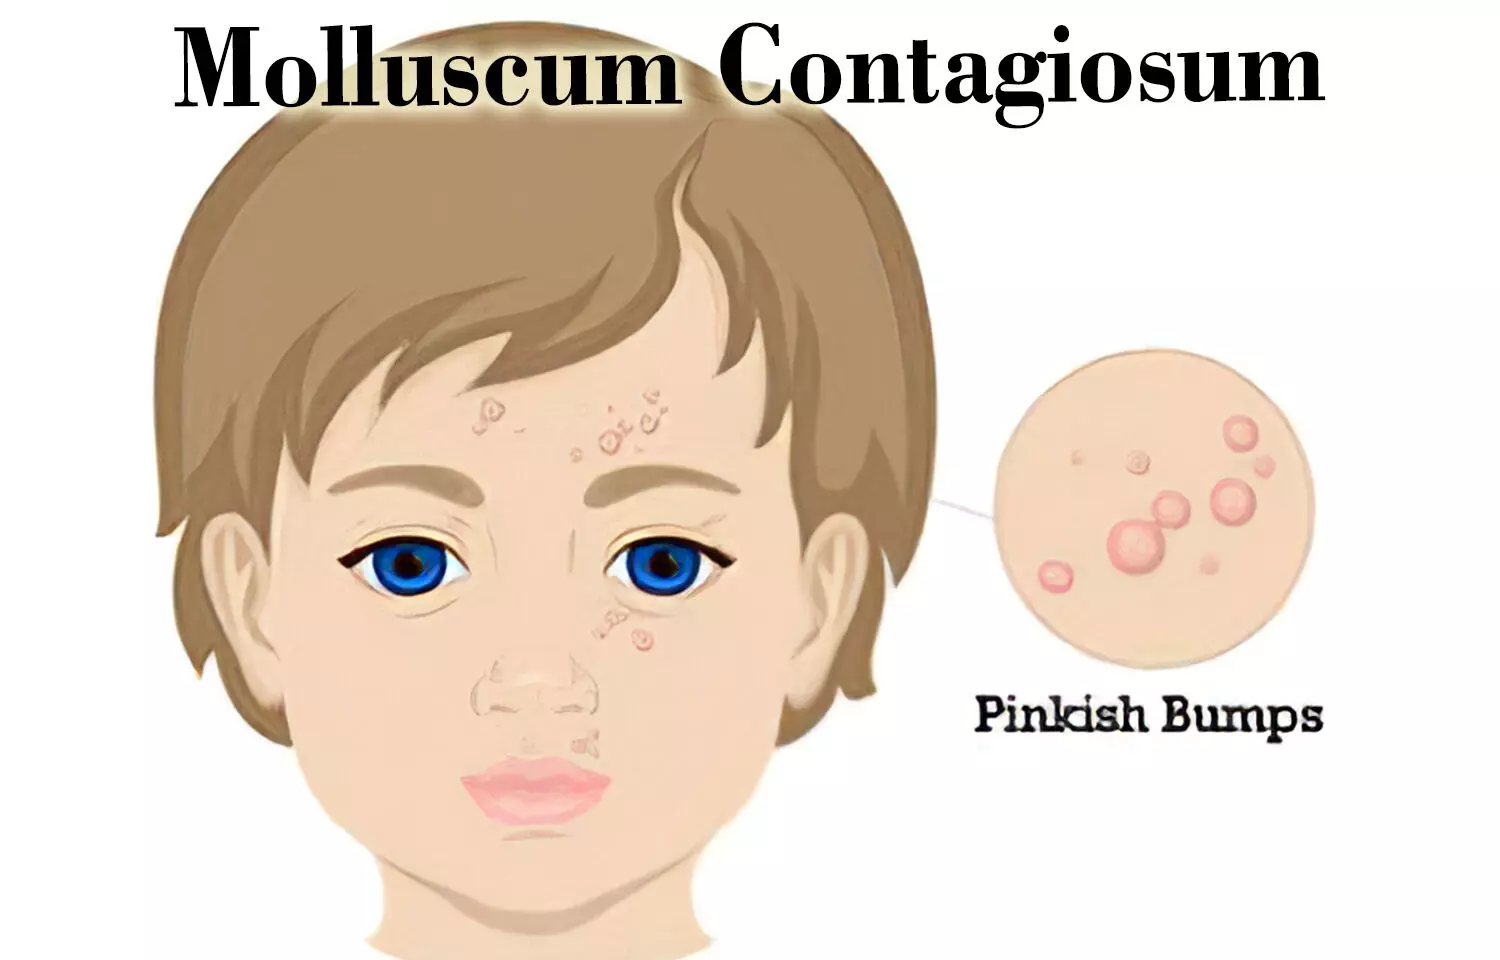 Autoinoculation, promising for molluscum contagiosum treatment: Study